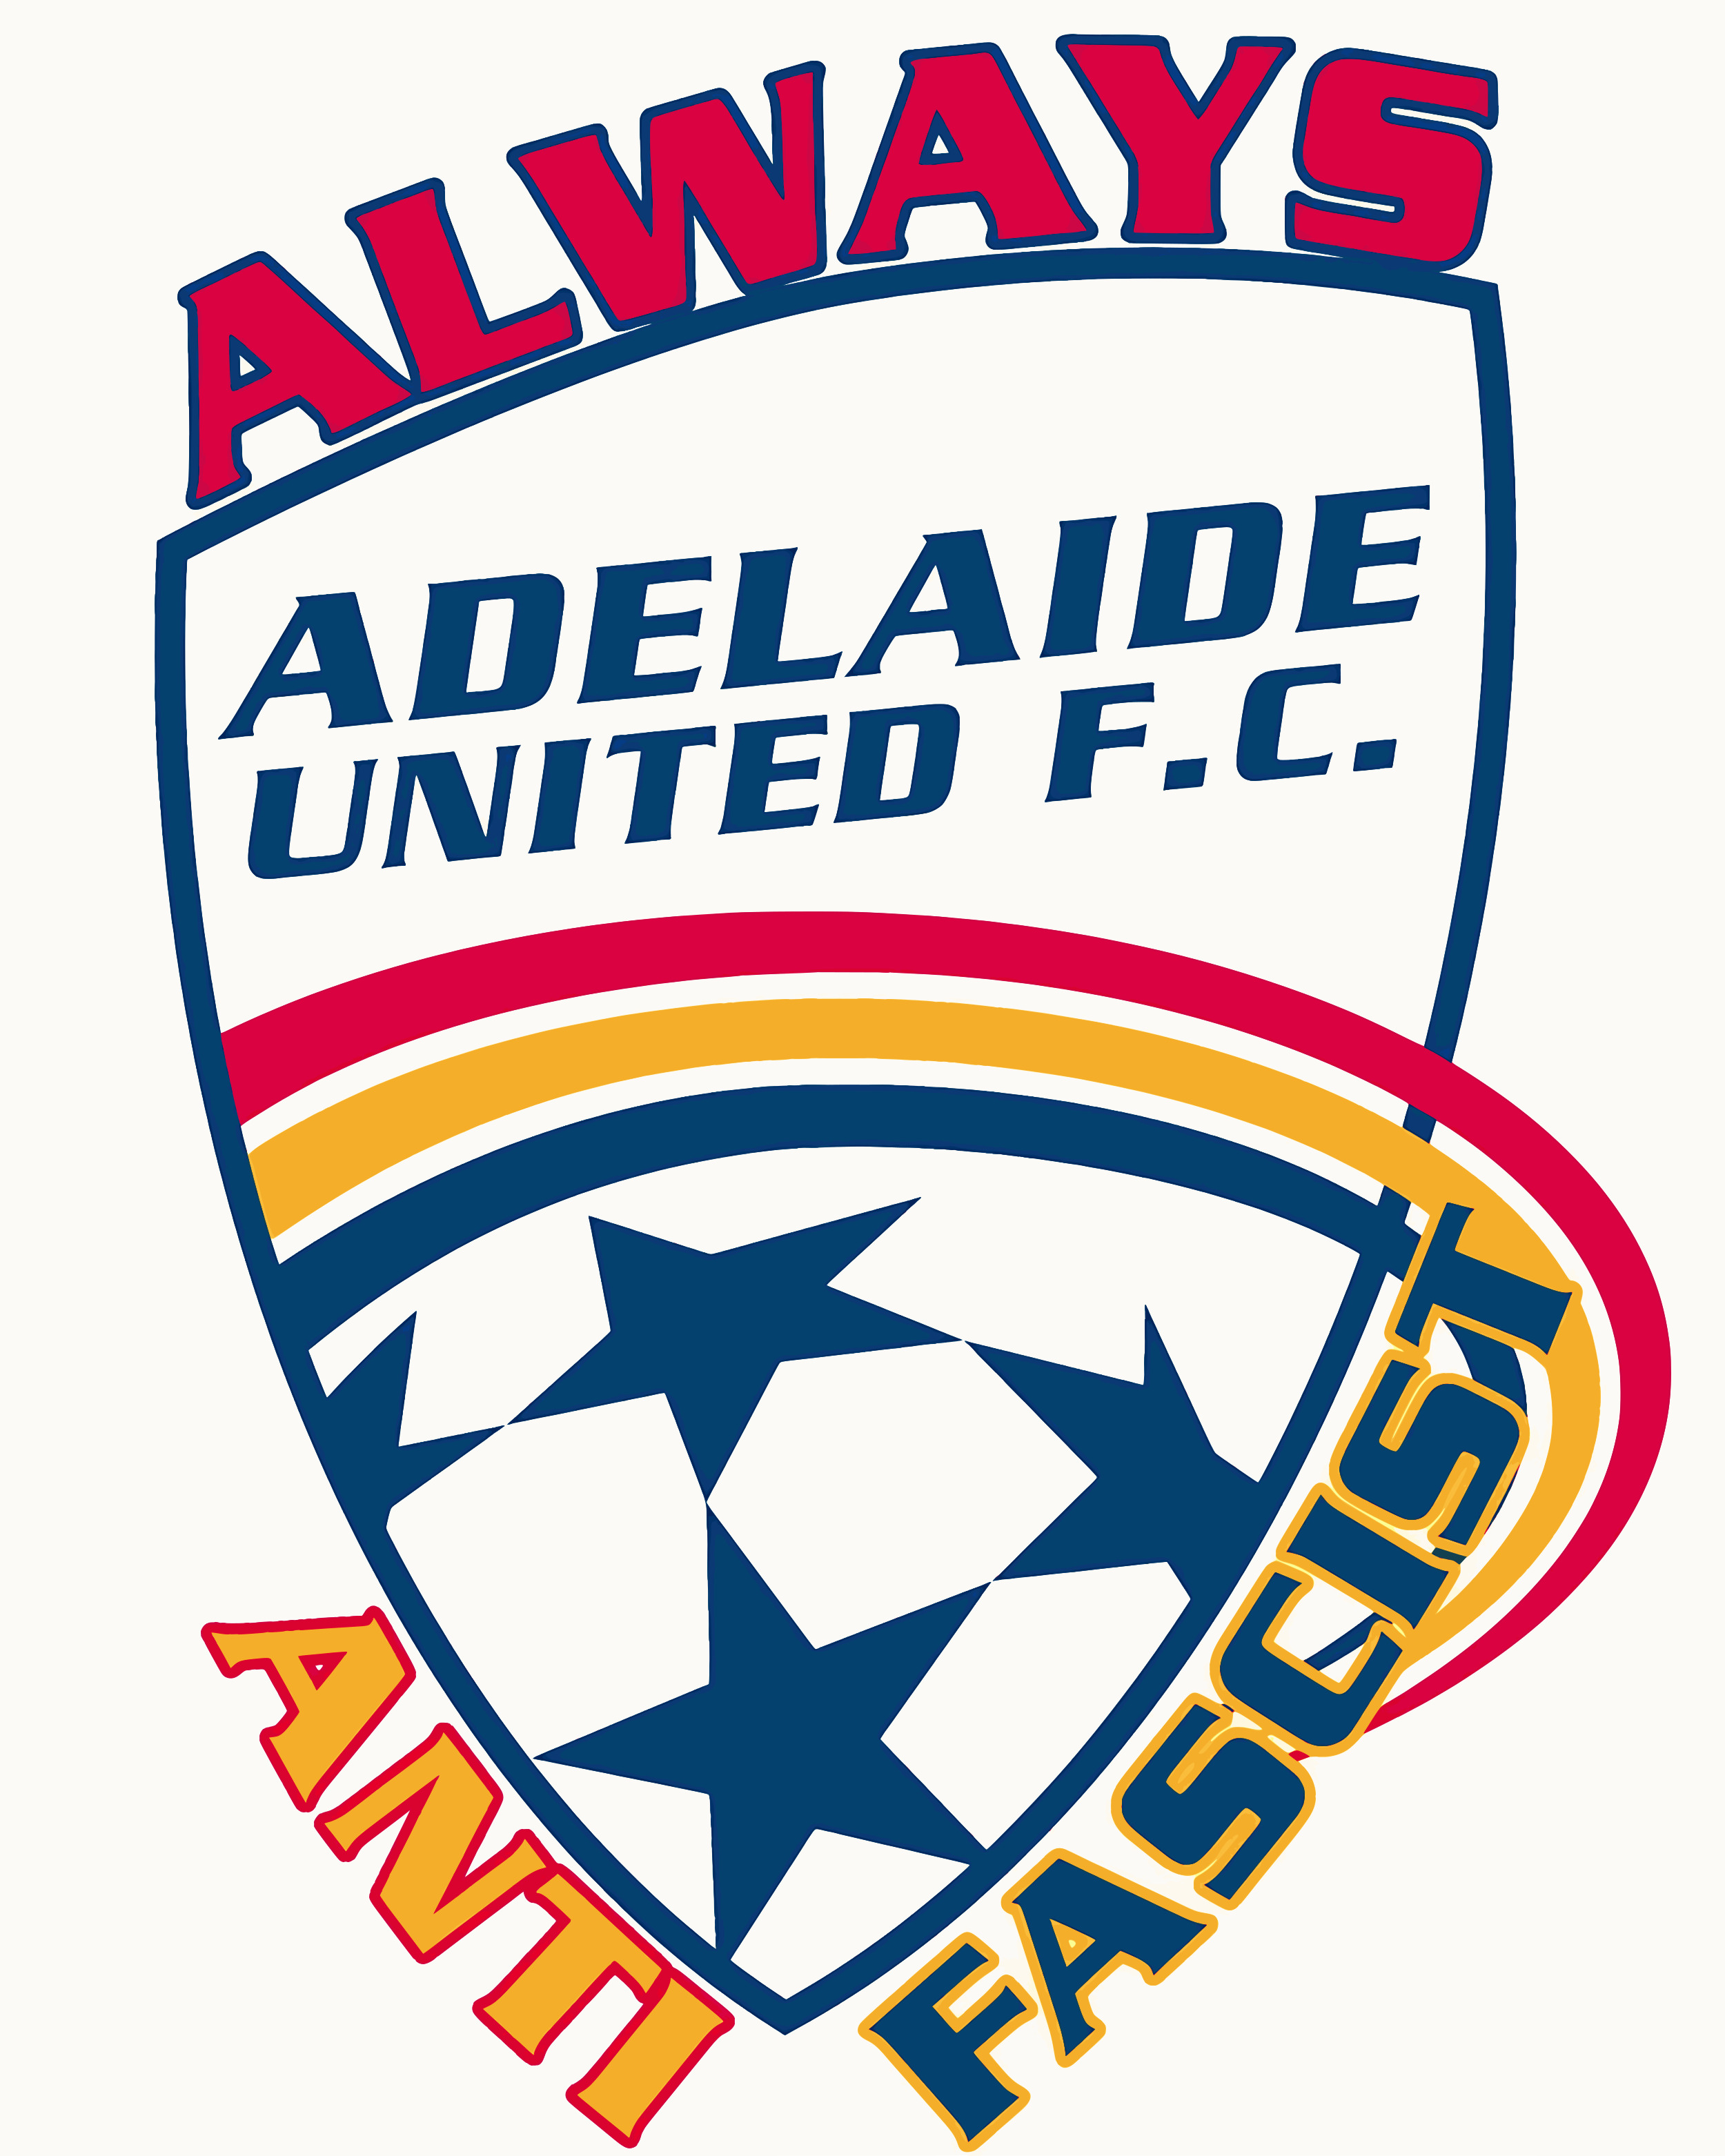 Adelaide United F.C. always antifascist